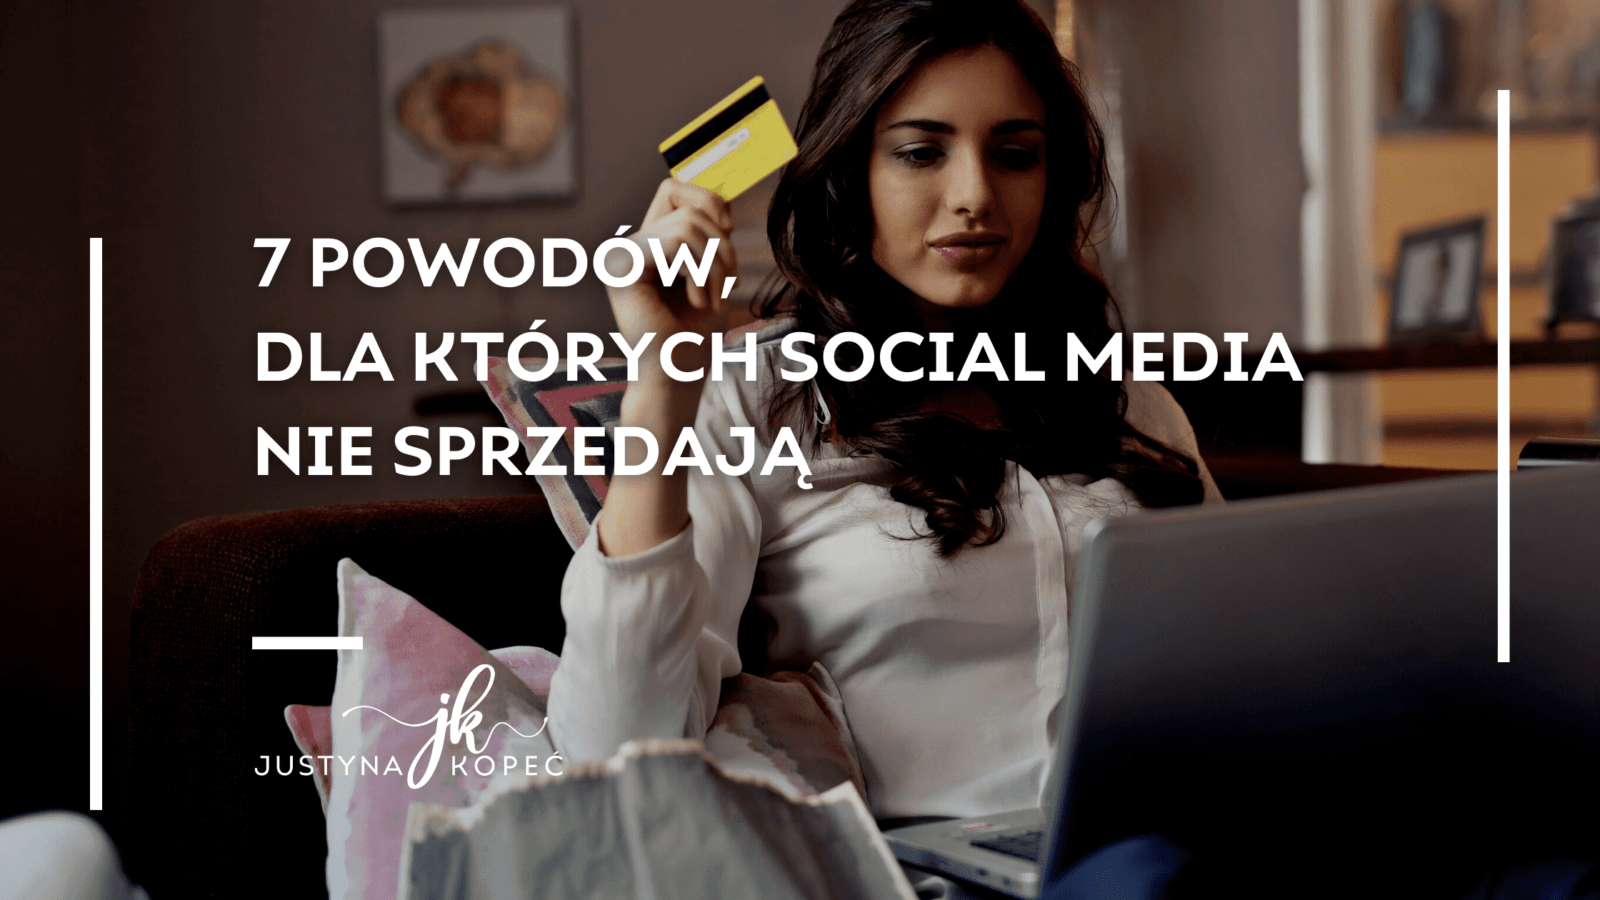 social media nie sprzedają Justyna Kopeć blog artykuł